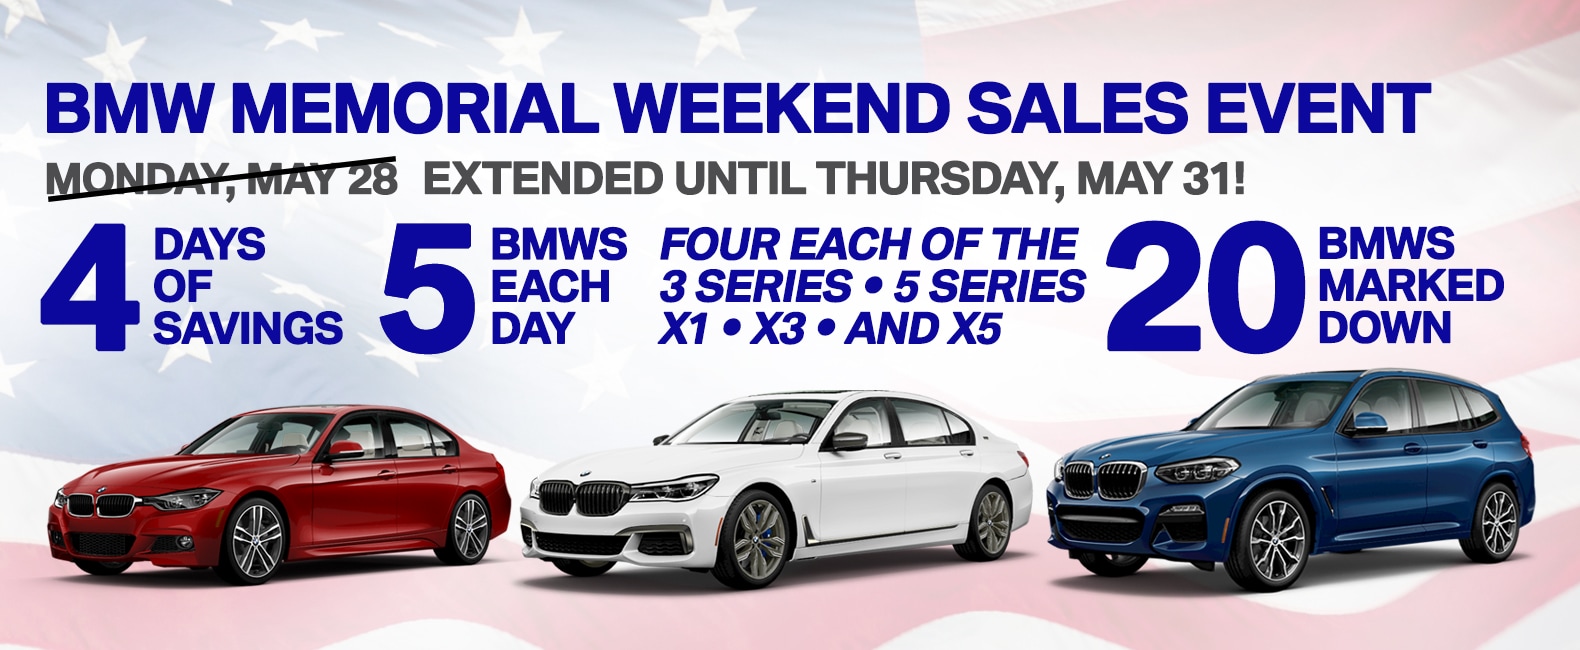 BMW MEMORIAL WEEKEND SALES EVENT! BMW of Honolulu